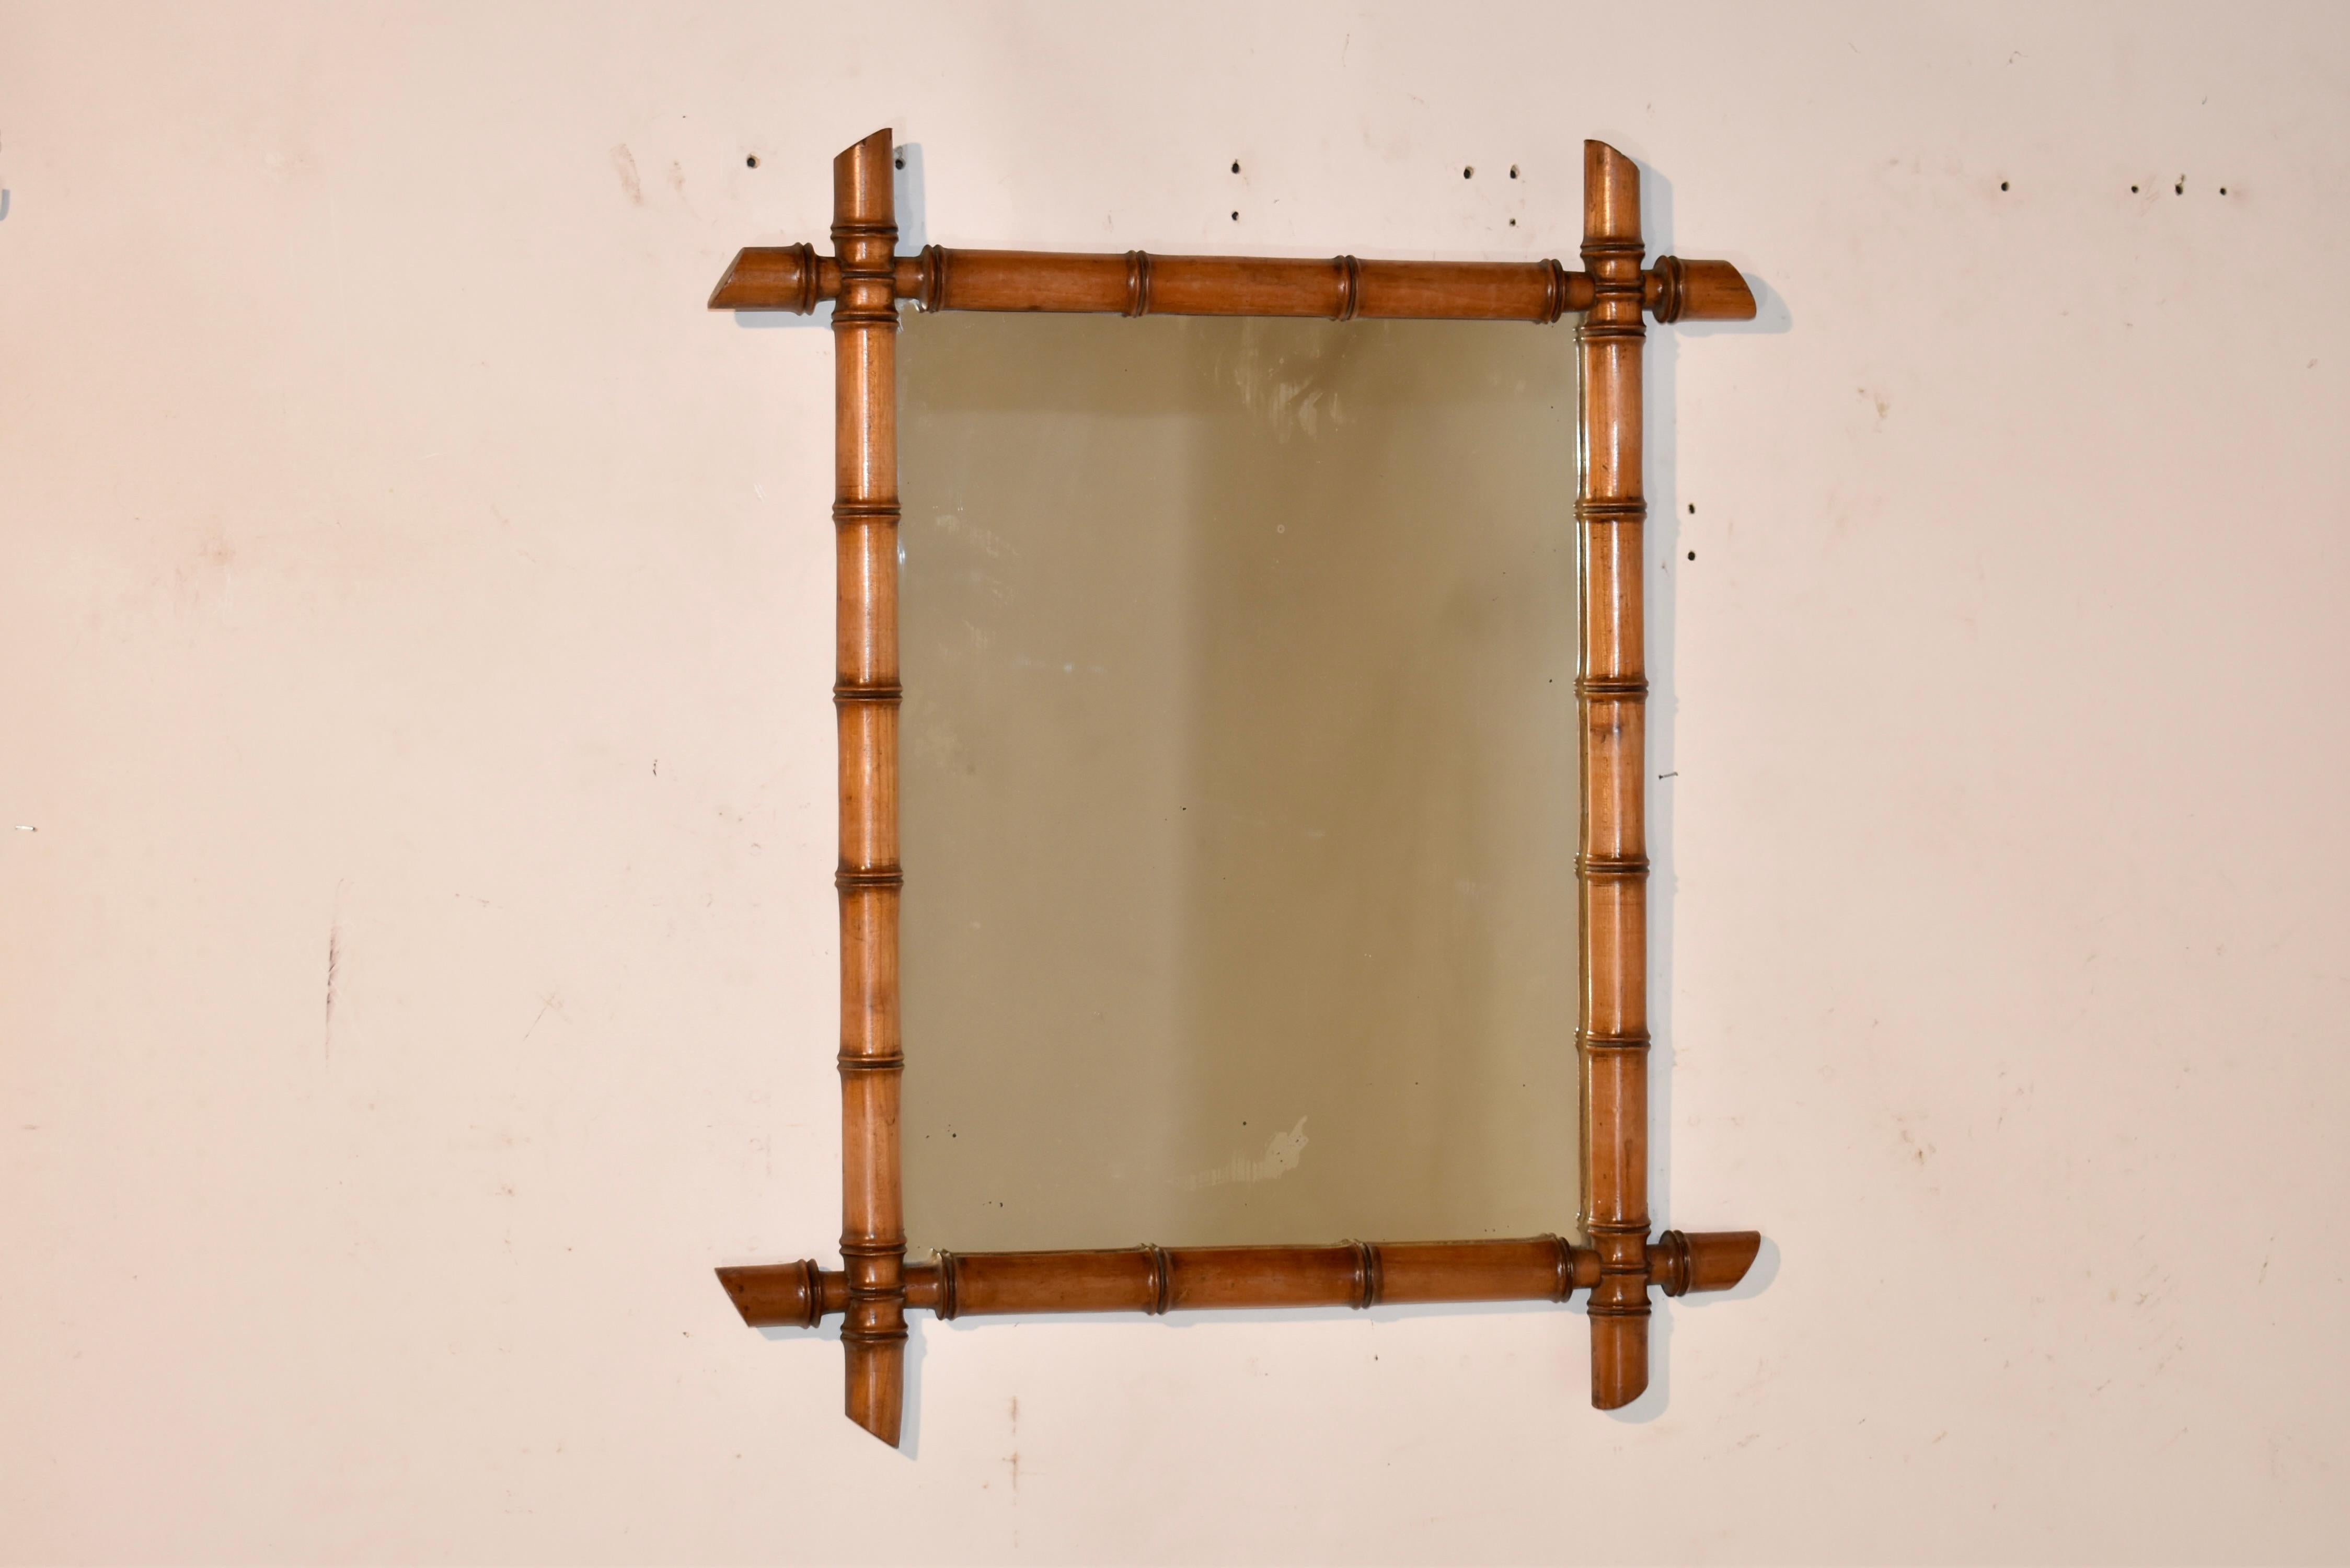 Spiegel mit Bambusrahmen aus dem späten 19. Jahrhundert aus Frankreich.  Der Rahmen ist aus Kirsche gefertigt und von Hand so gedrechselt, dass er an Bambus erinnert.  Er umgibt einen alten Spiegel, der einige altersbedingte Schäden am Quecksilber